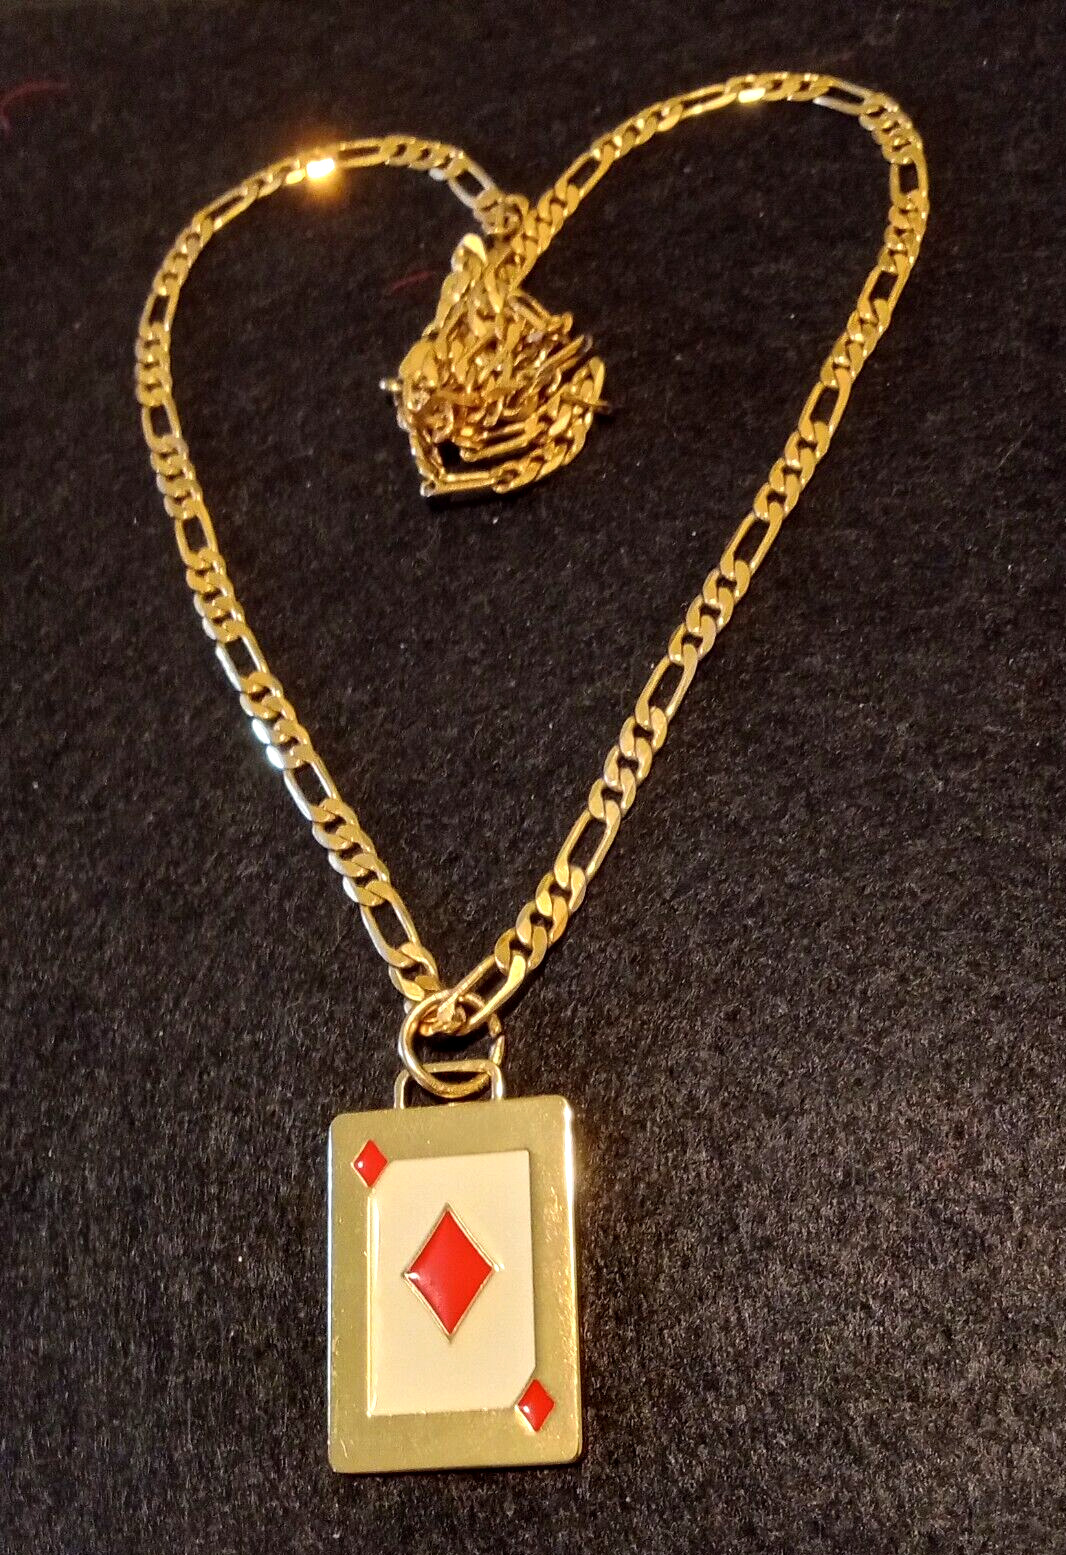 ESTEE LAUDer ace of diamonds NECKLACE w/ ch14k Mex chain